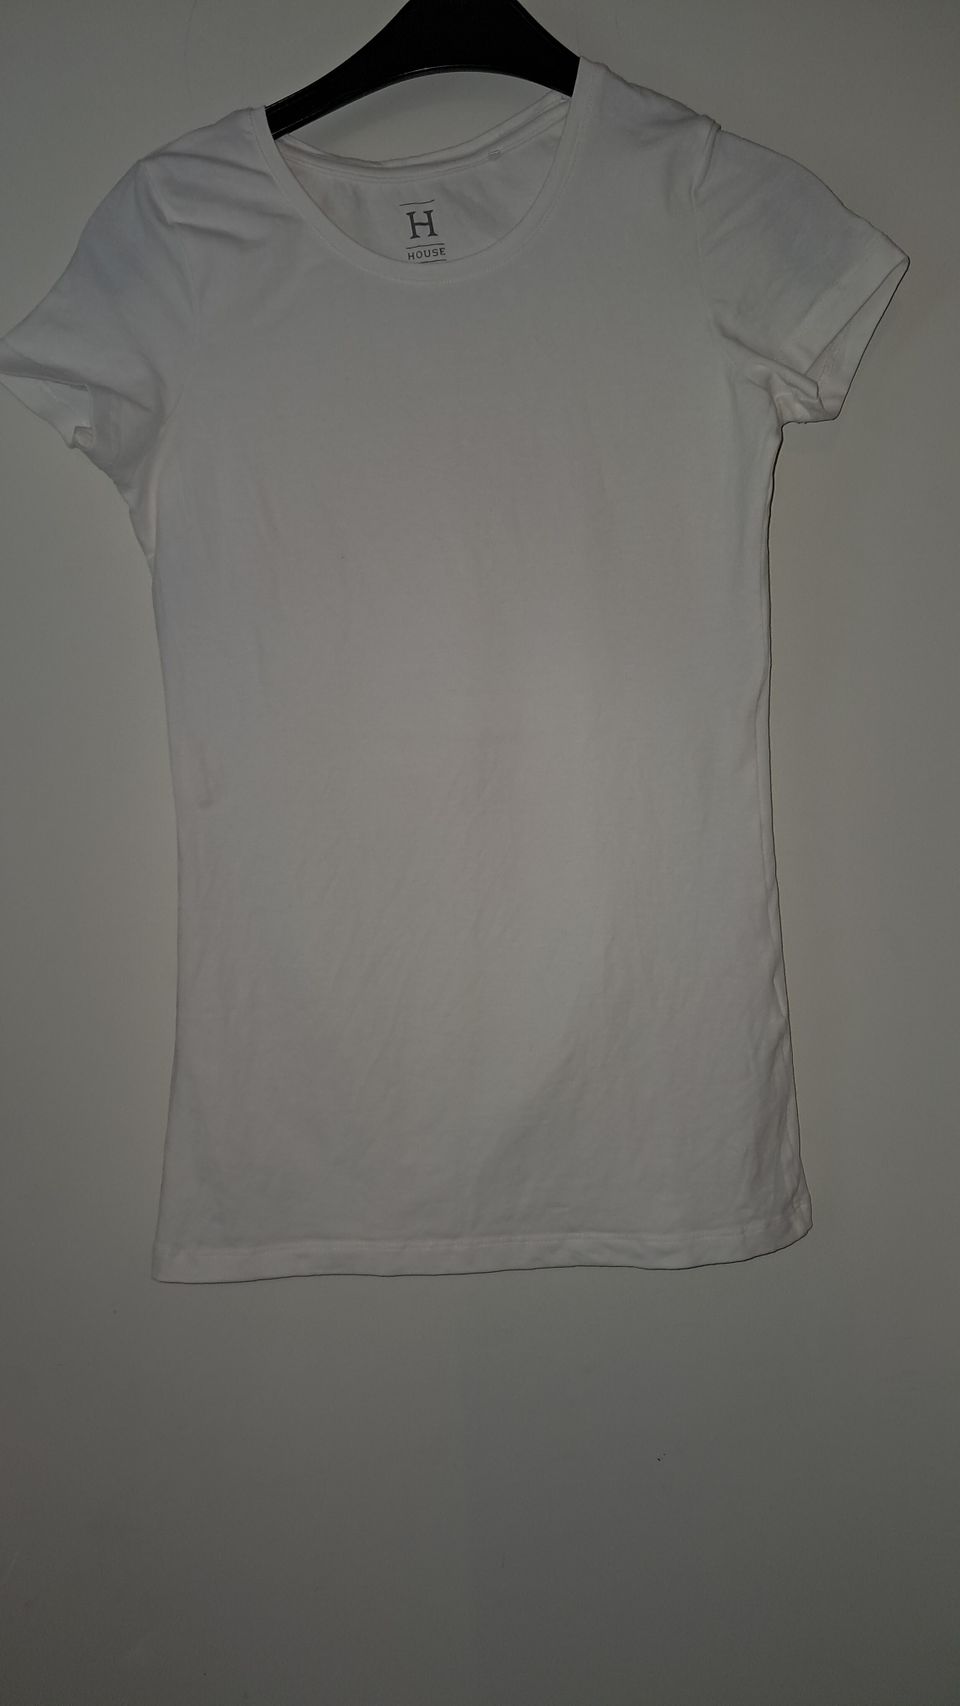 Housen valkoinen t-paita